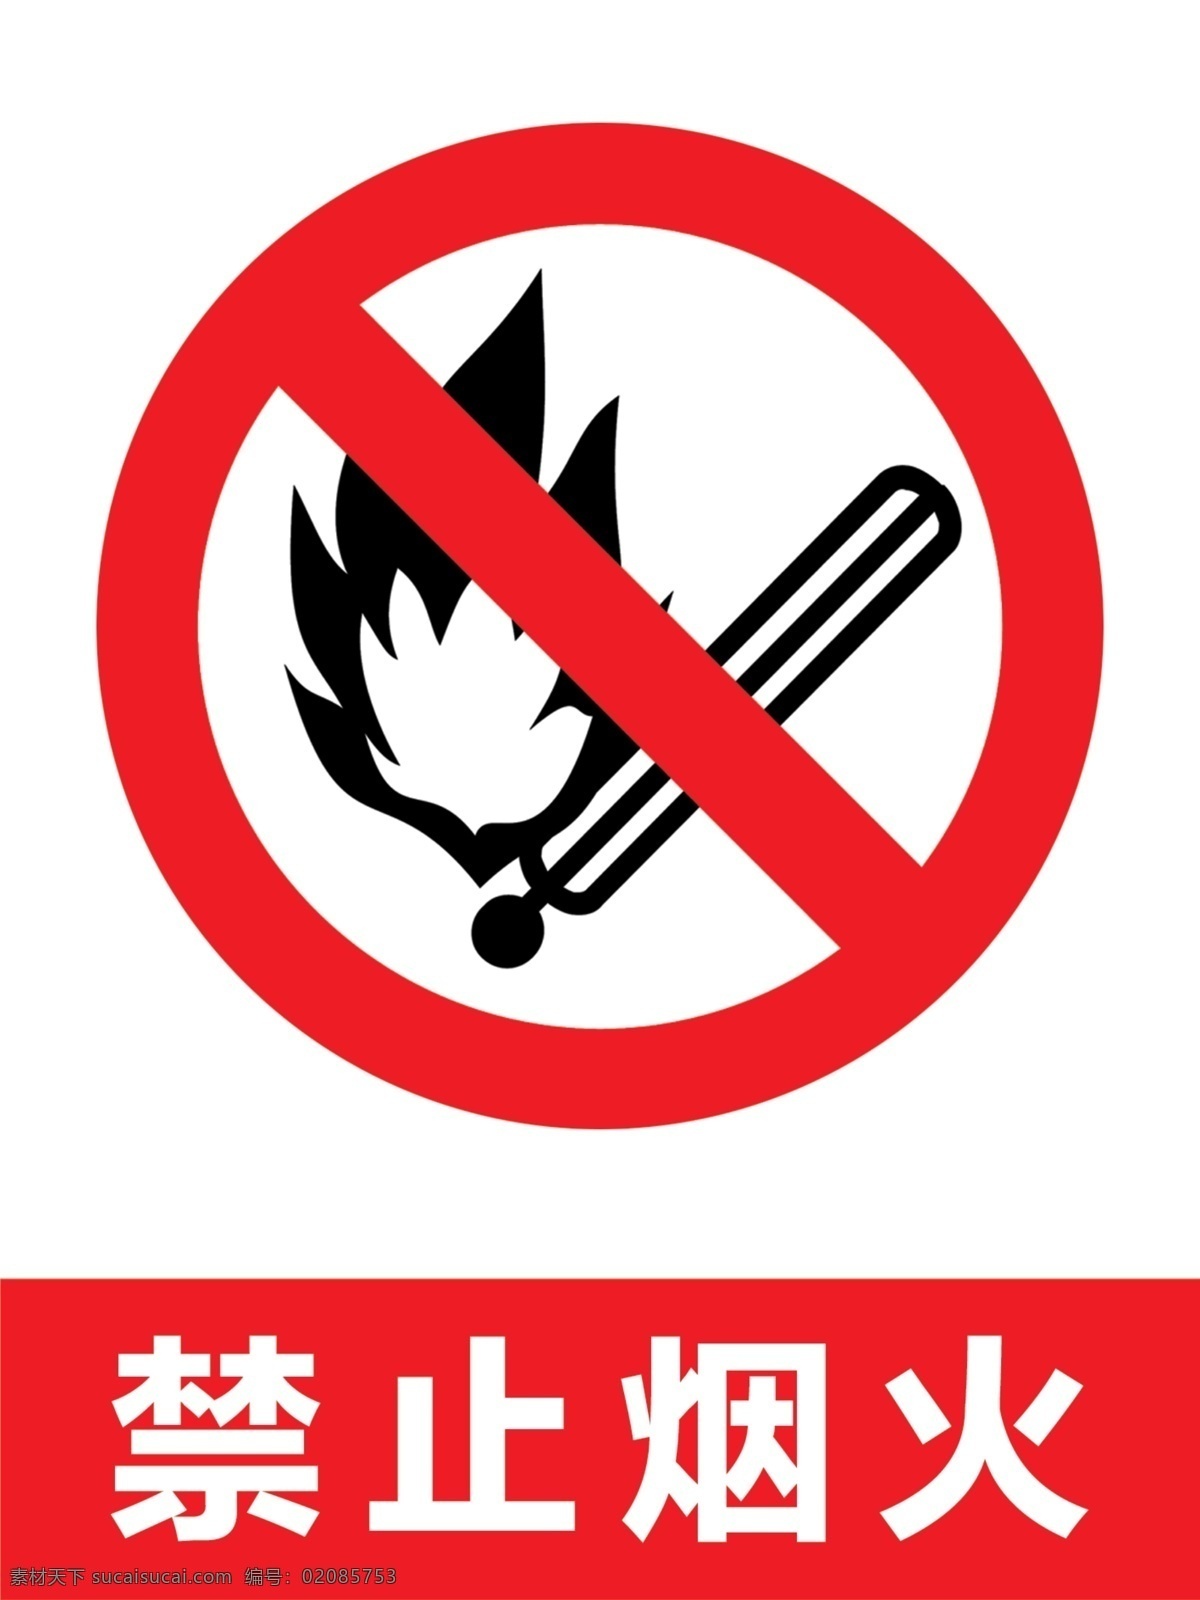 禁止烟火图片 禁止烟火 图标 标识 烟火 禁止 分层